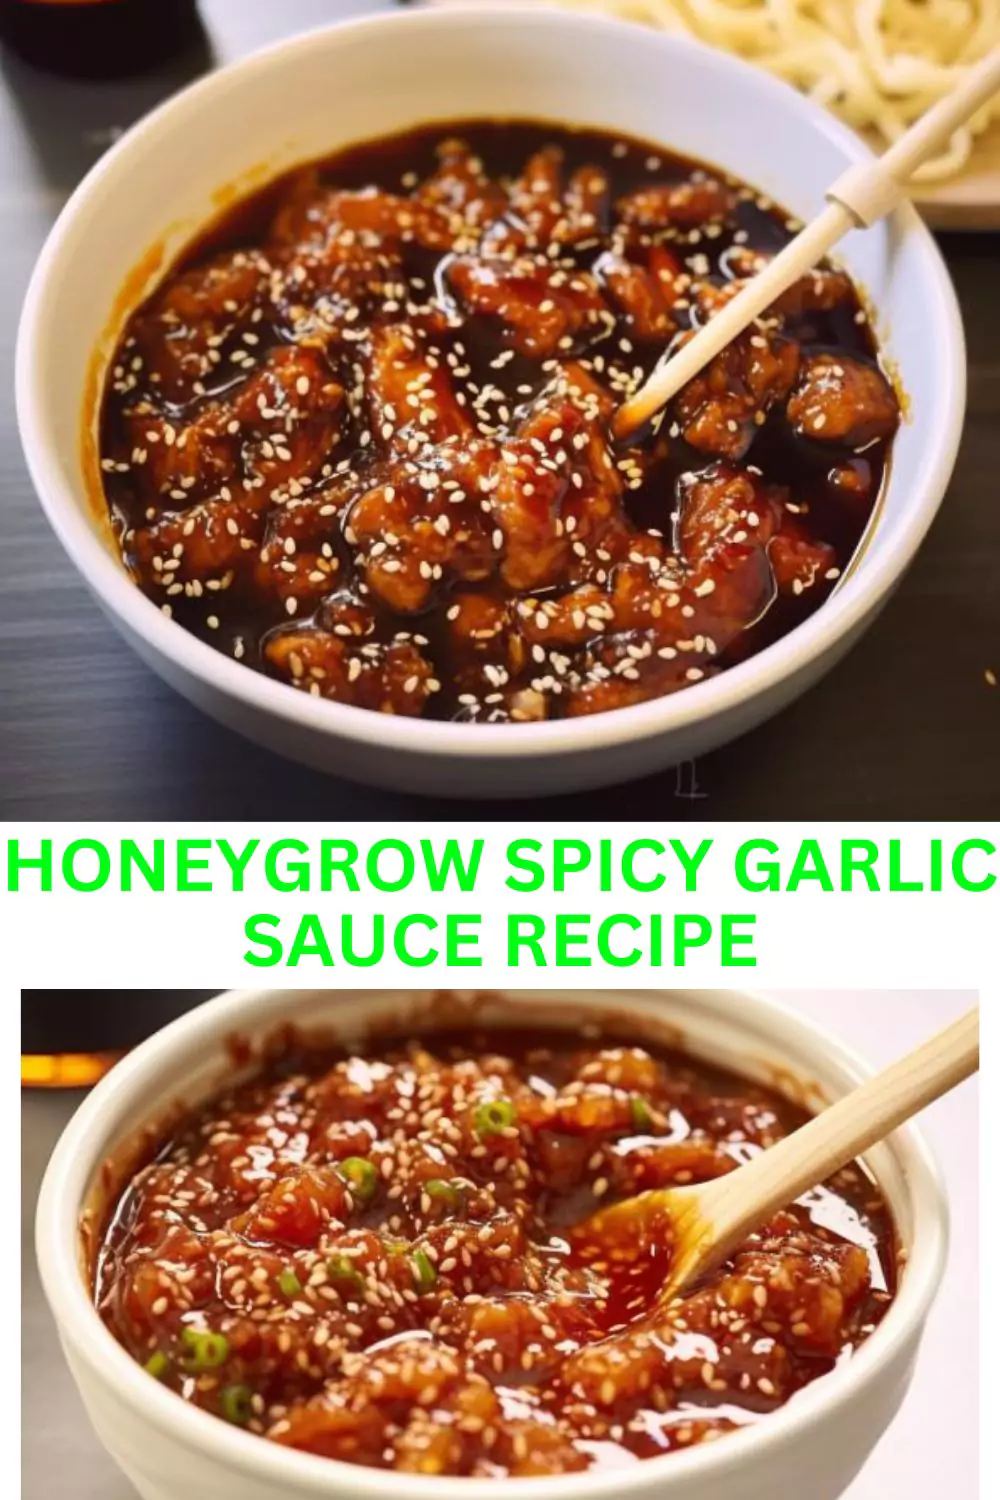 Best Honeygrow Spicy Garlic Sauce Recipe